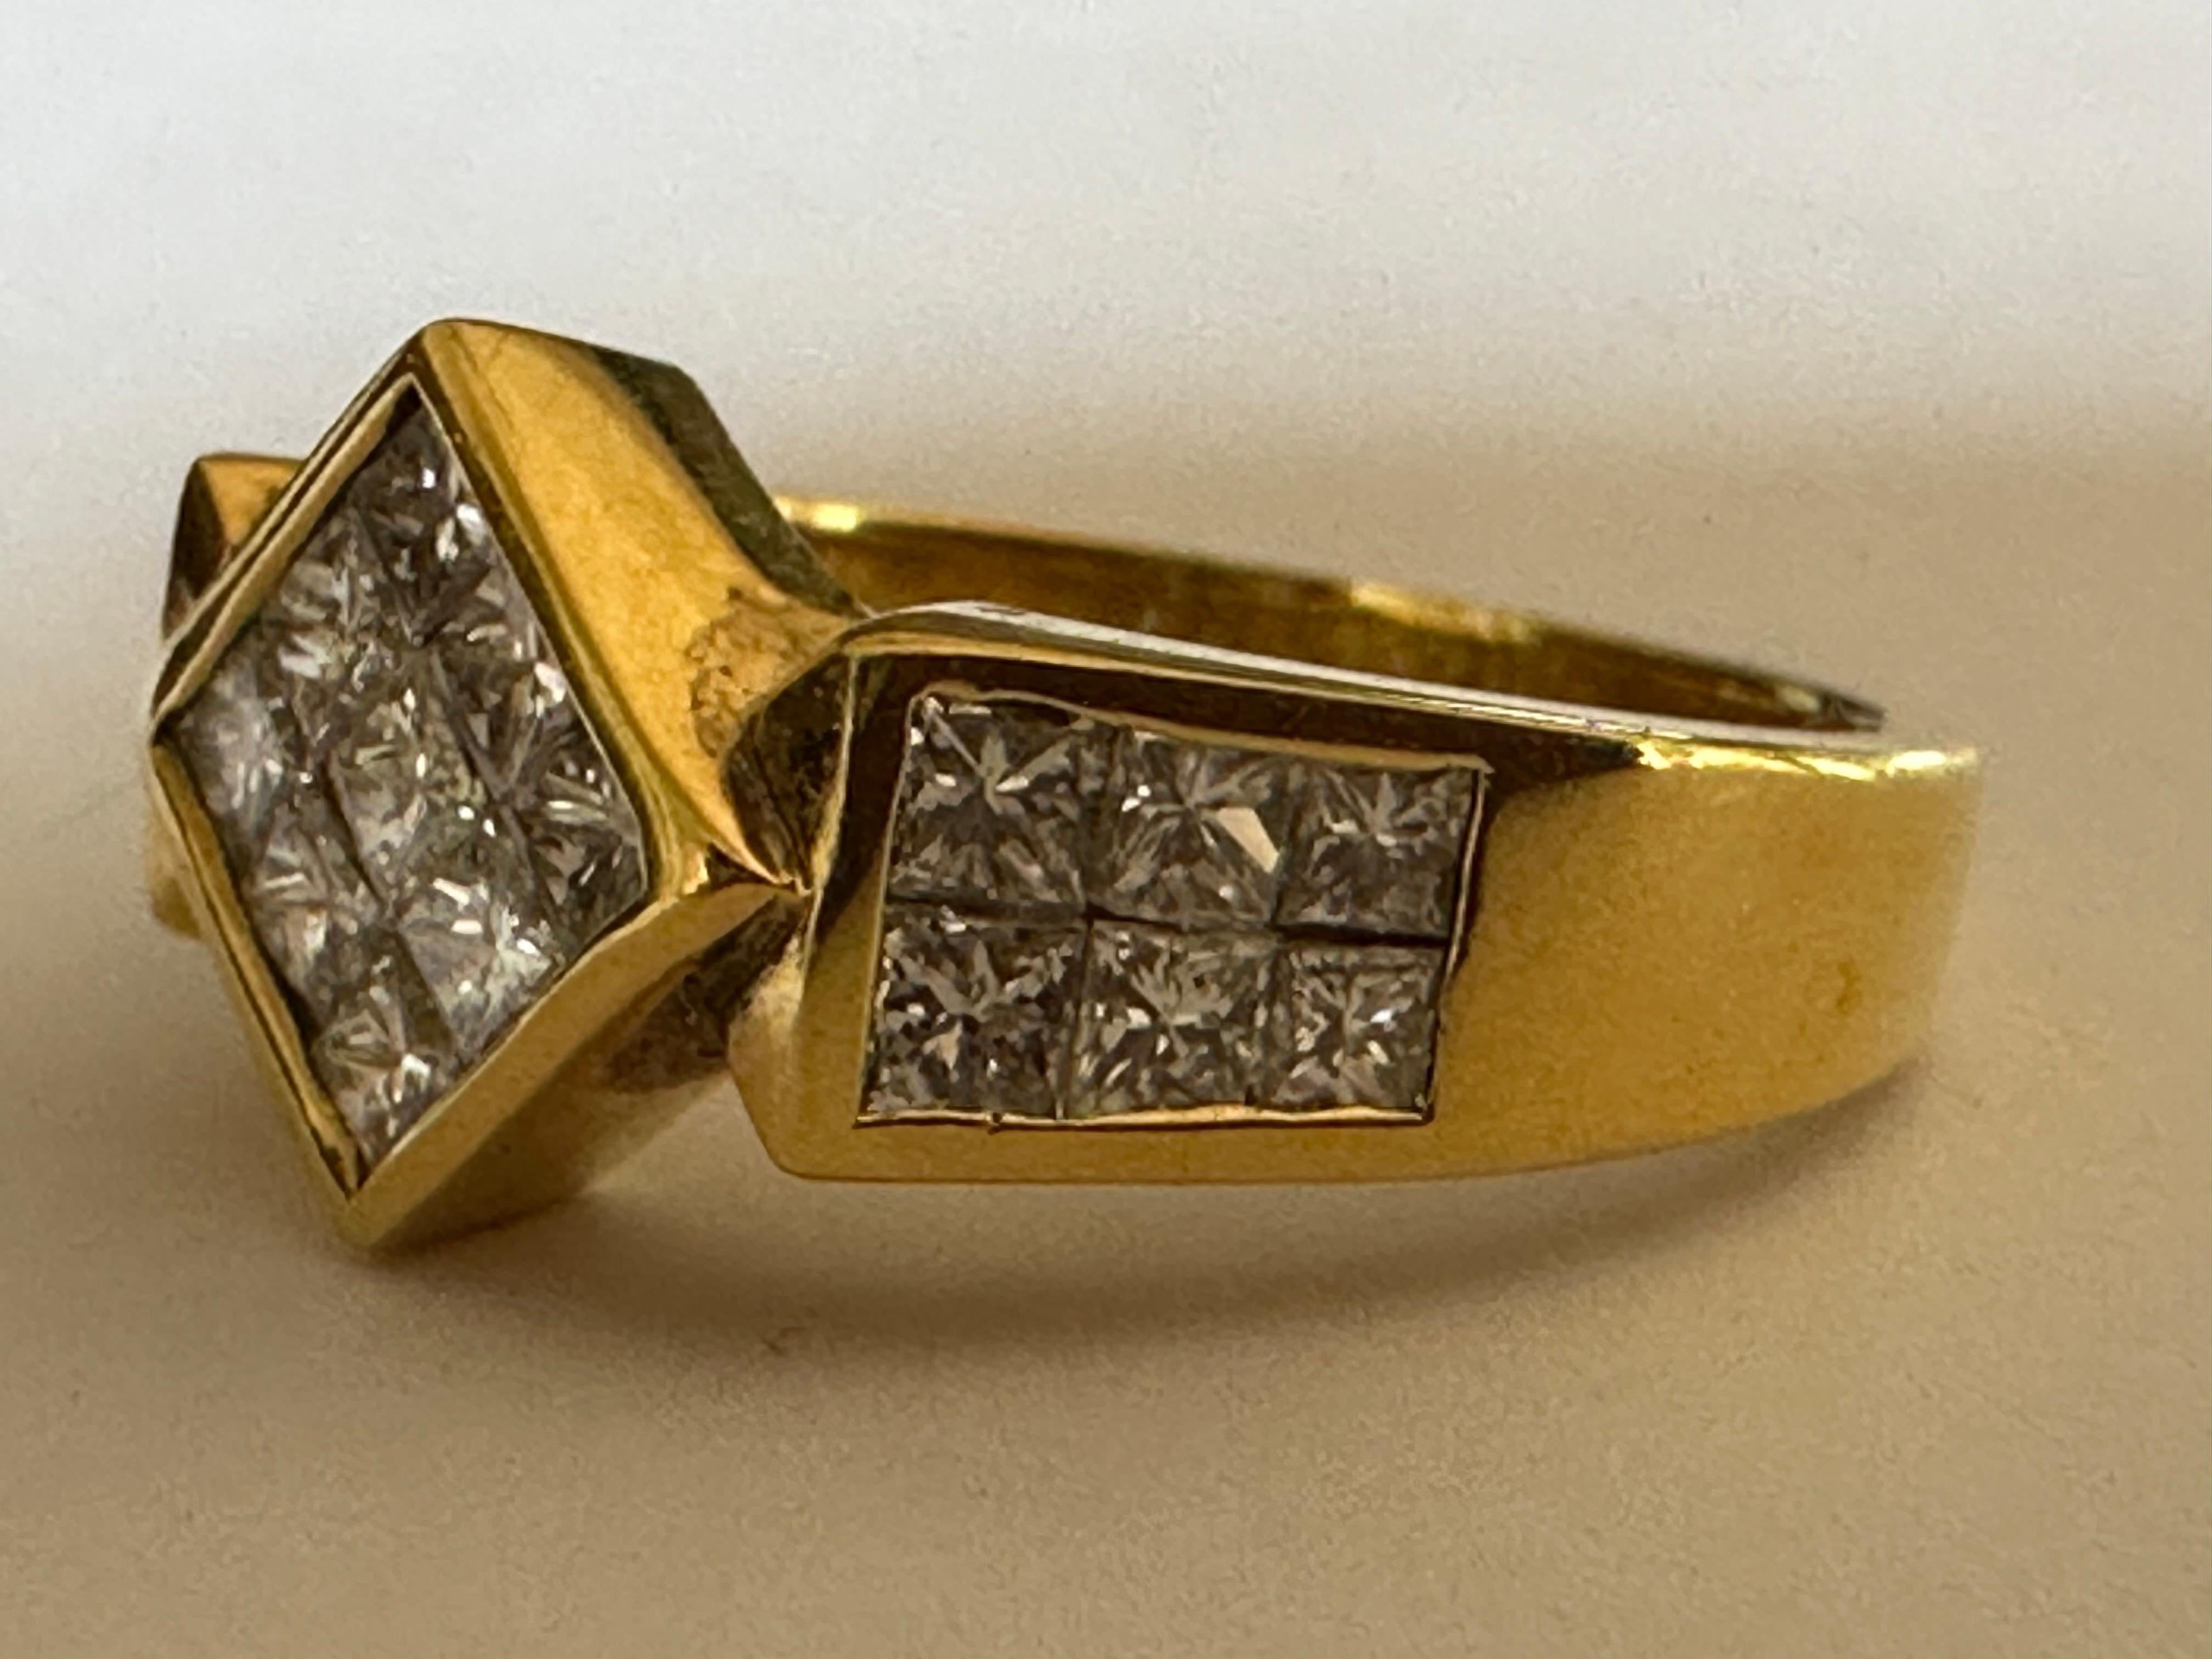 Einundzwanzig Diamanten im Prinzess-Schliff mit einem Gesamtgewicht von ca. 1,41 Karat funkeln in einer unsichtbaren Fassung in diesem hübschen Ring. Fassung aus 18 Karat Gelbgold. 
